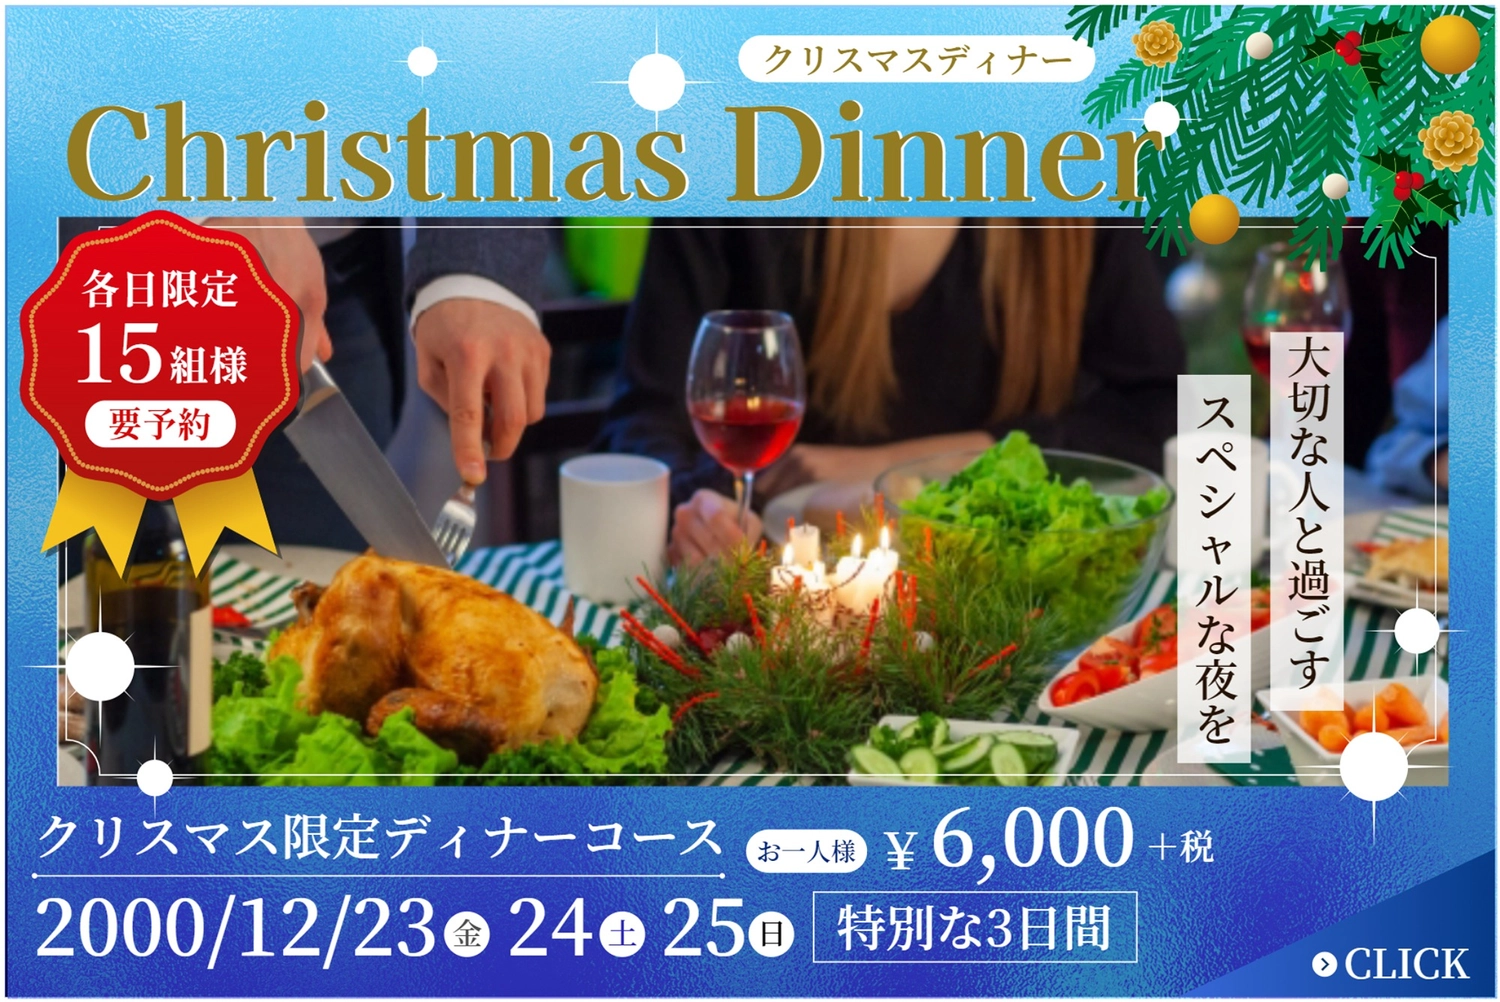 クリスマスディナーバナー, nhà hàng, thiết kế, biên tập, banner mẫu